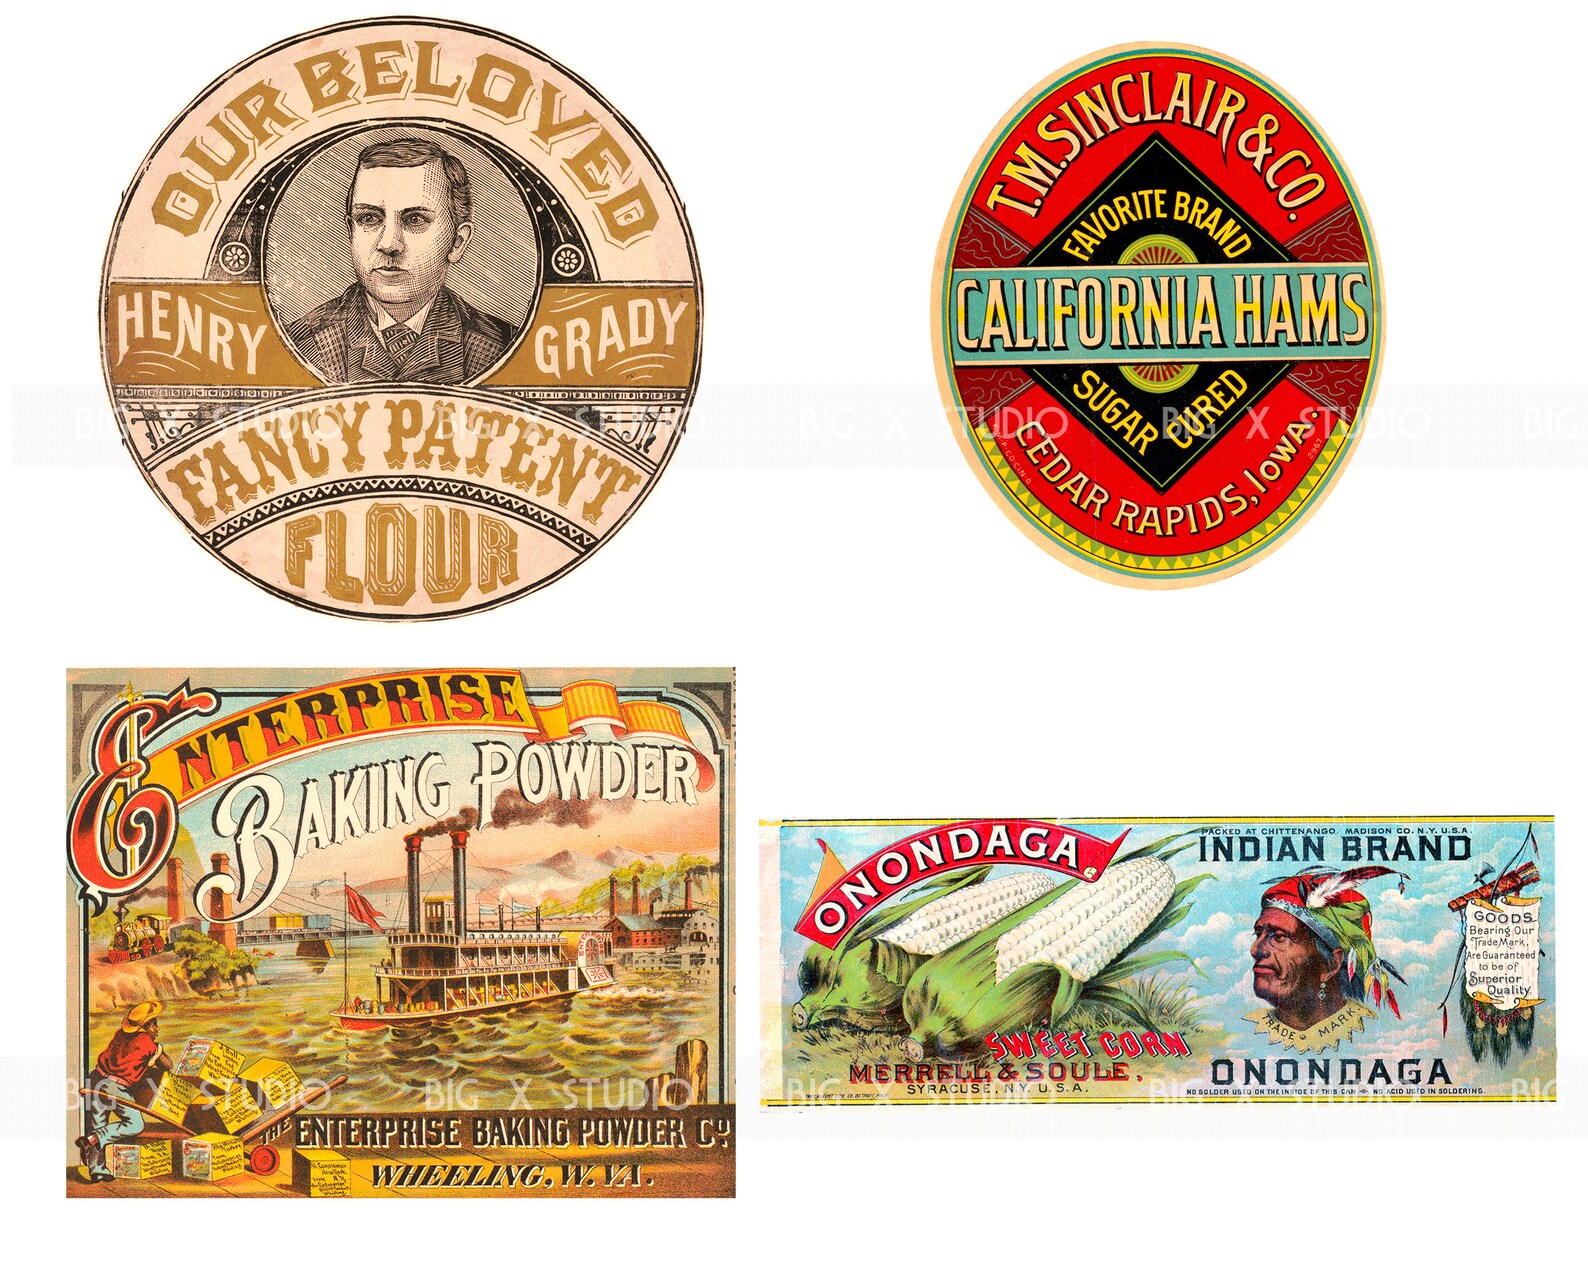 Vintage Food Label Images Set 3 Digital Download Etsy